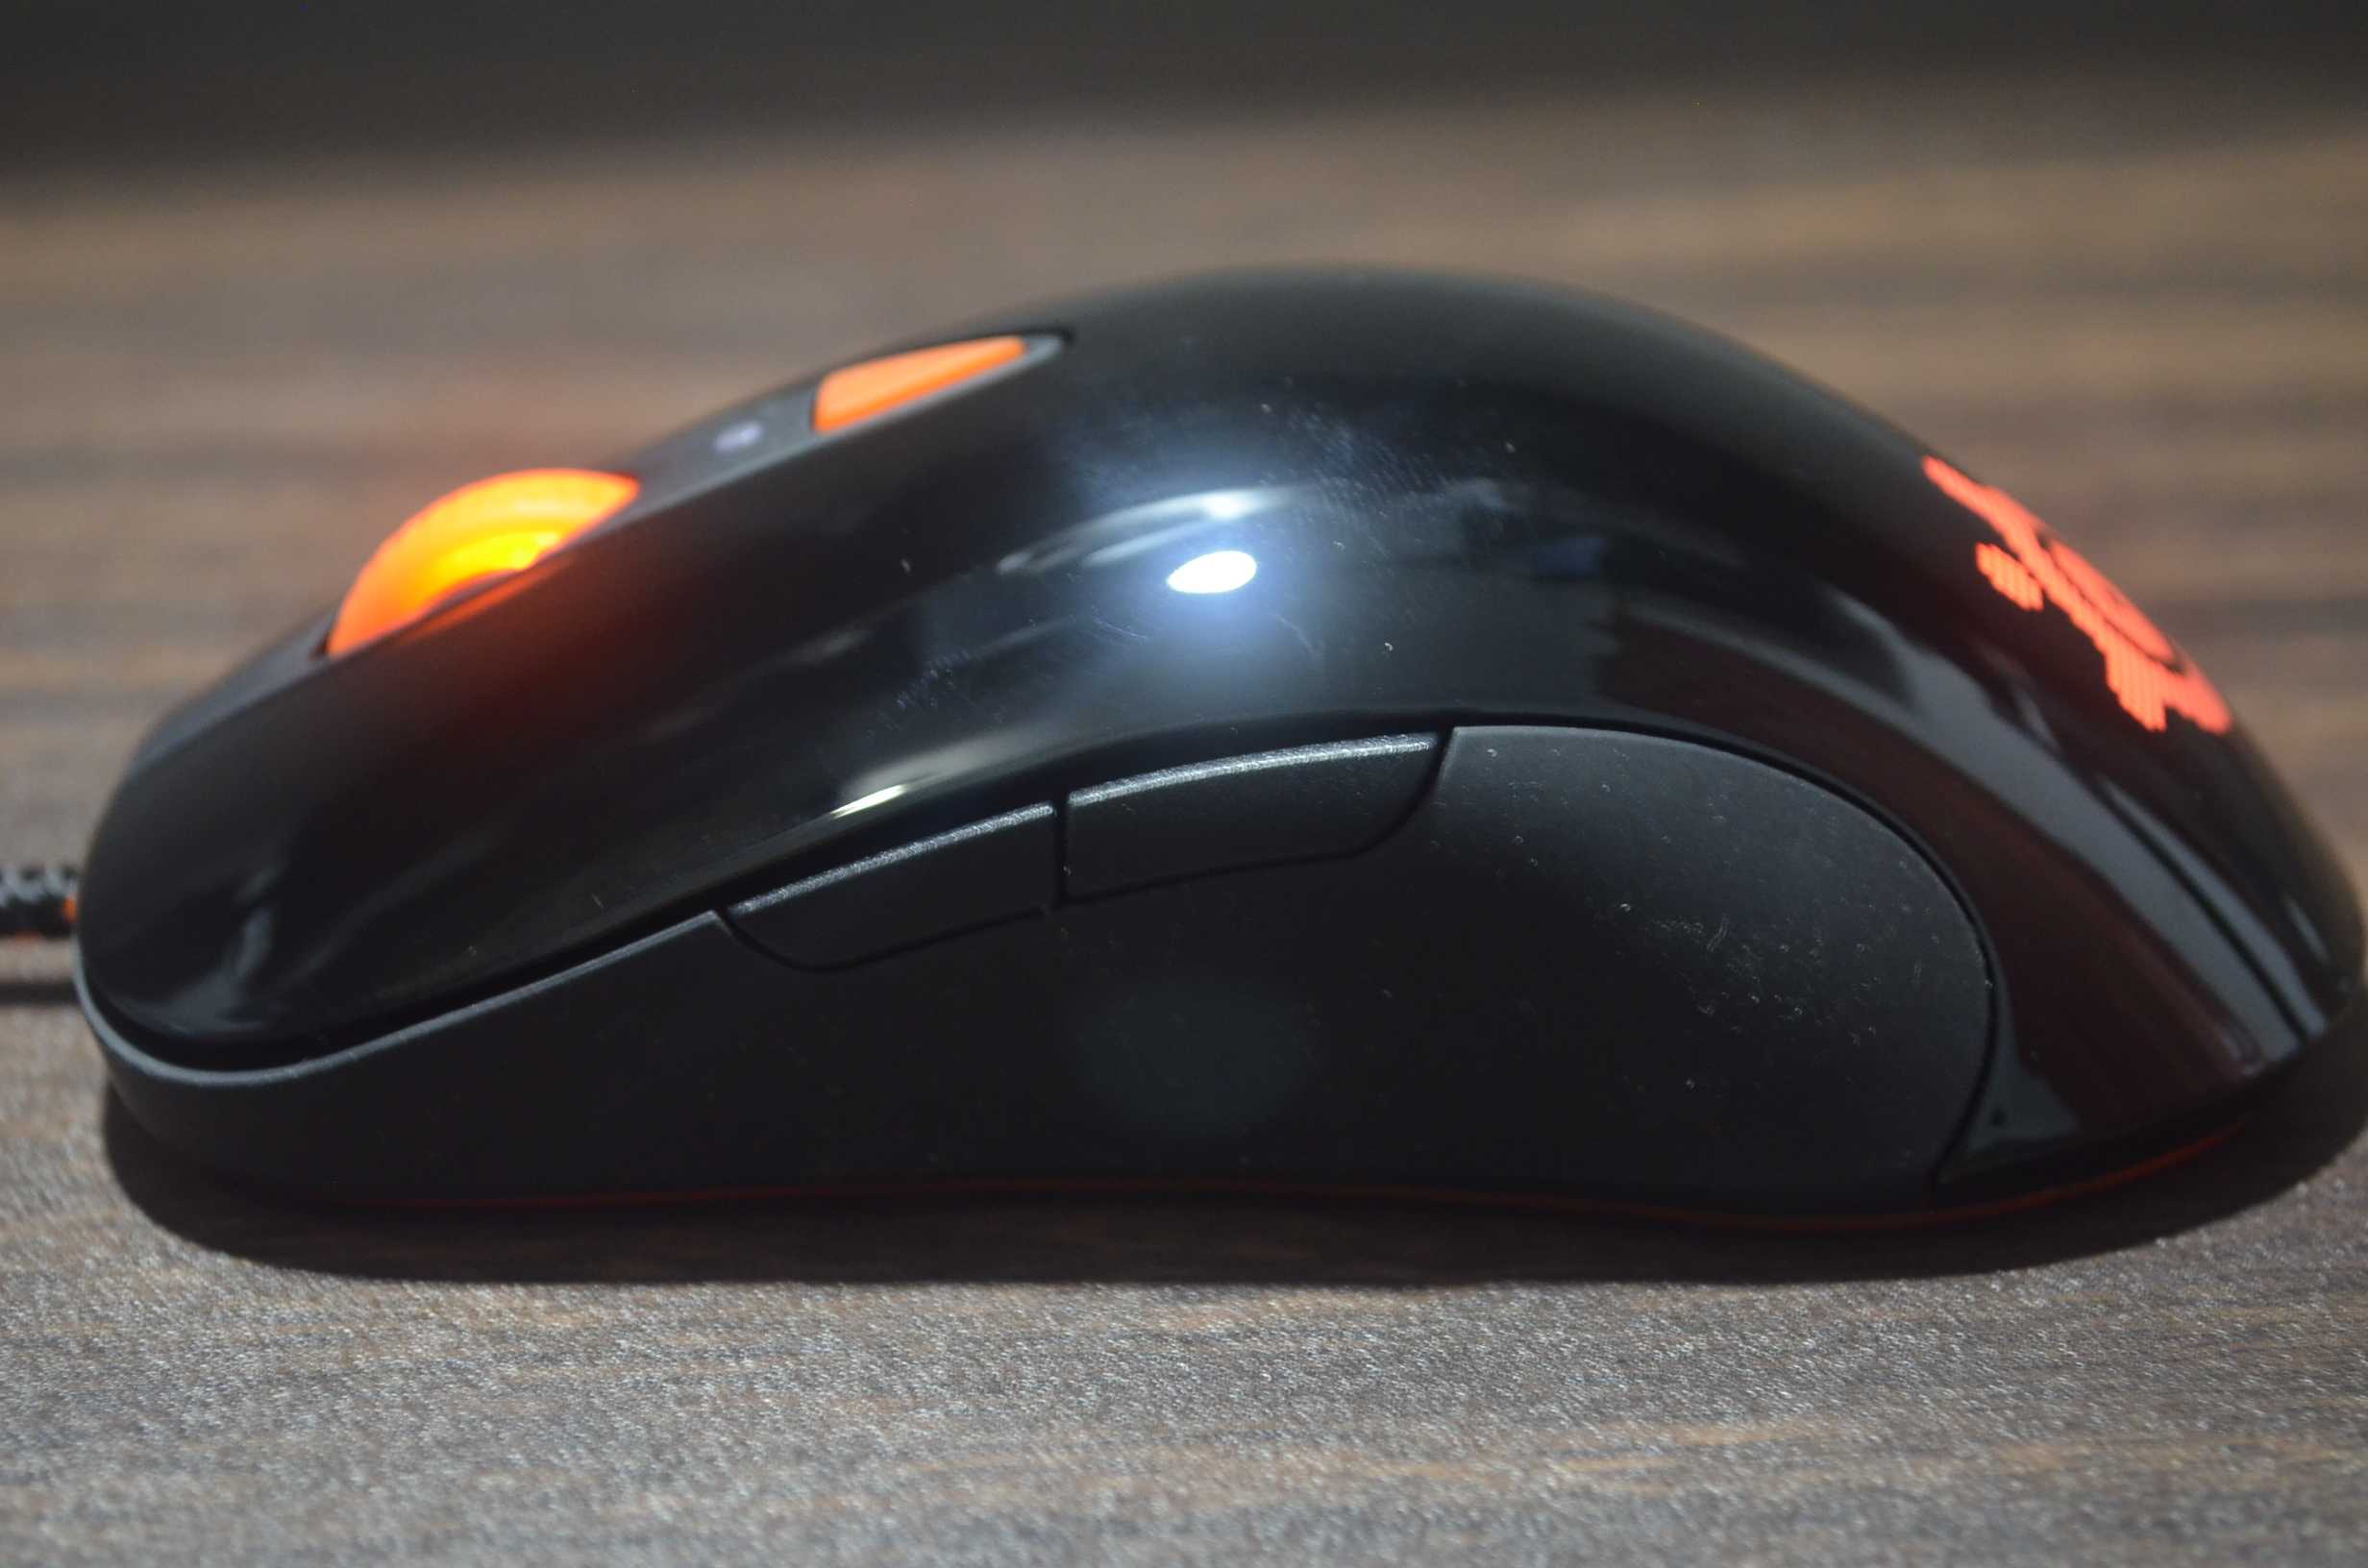 Игровая мышь steelseries sensei raw heat orange (62163) (черный/оранжевый) купить за 3990 руб в ростове-на-дону, отзывы, видео обзоры и характеристики